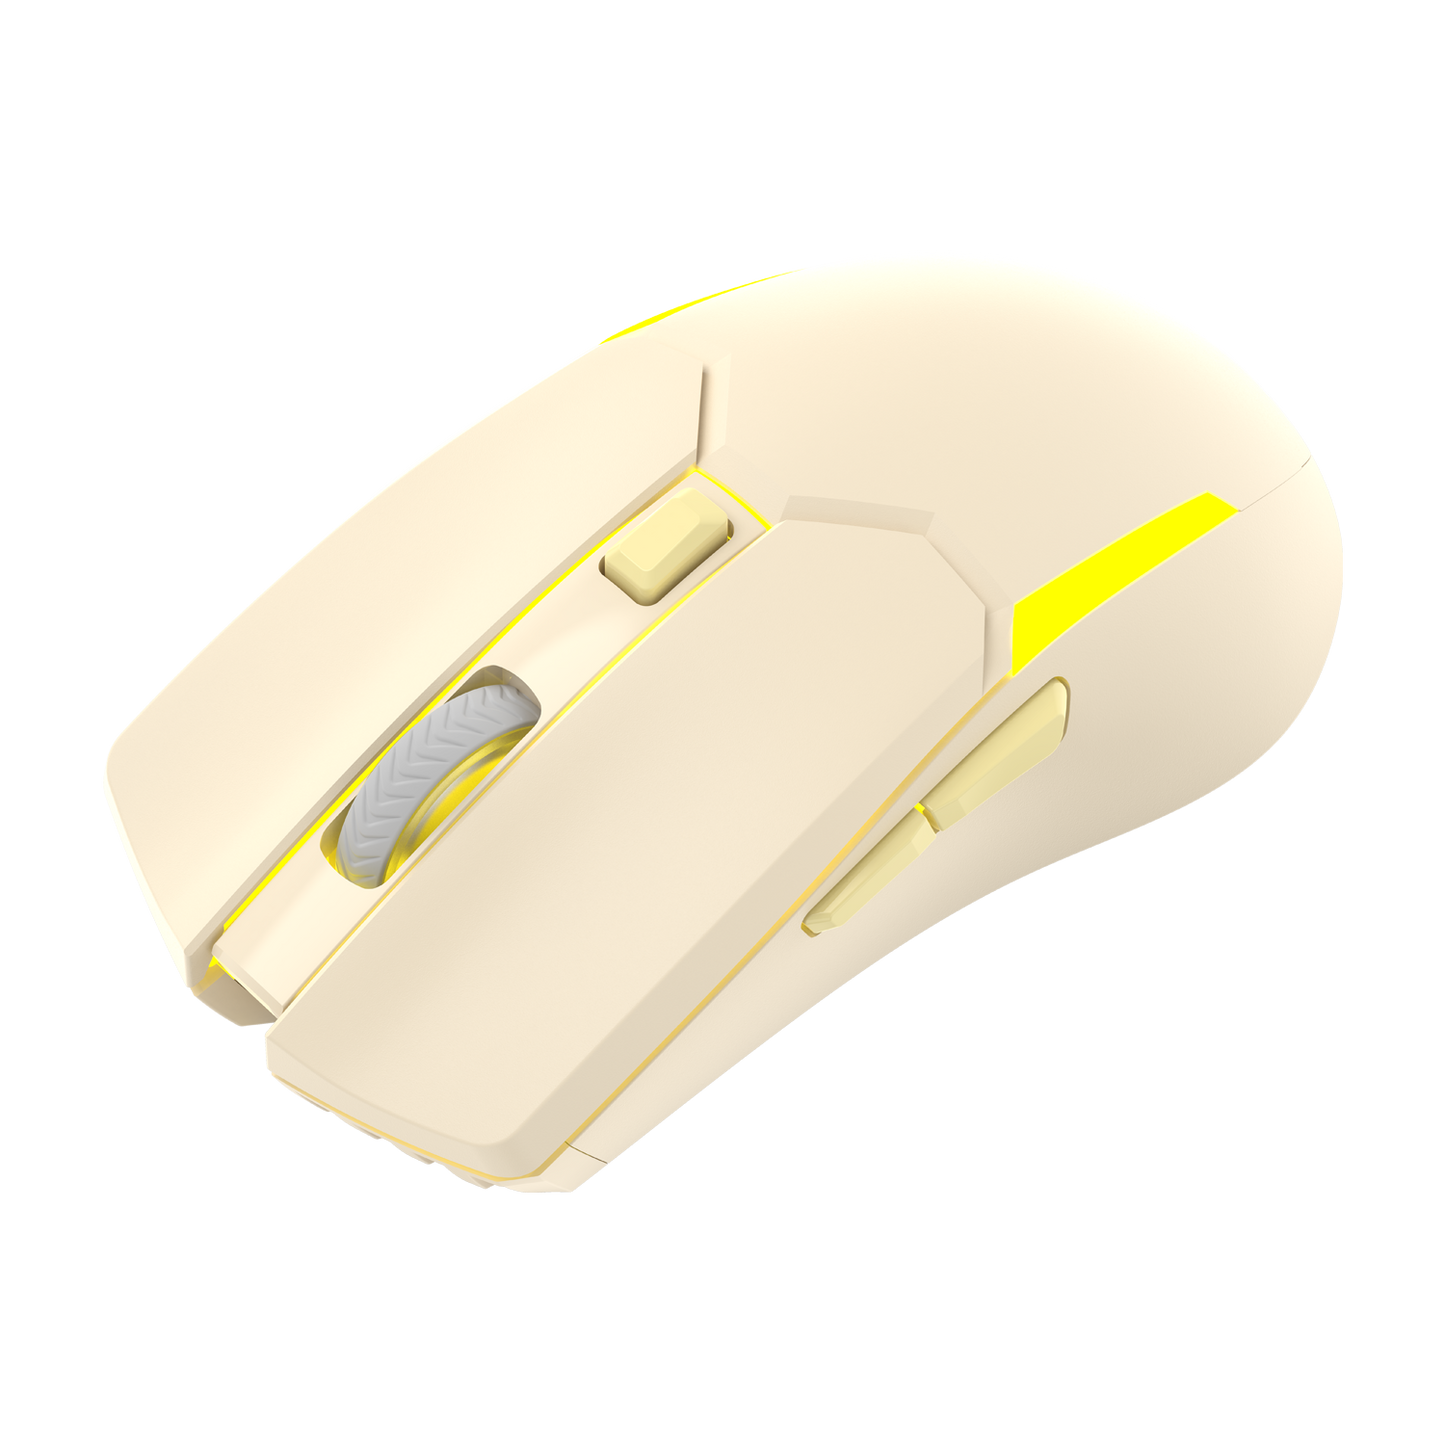 Fantech Wireless Gaming Mouse - Beige (VENOM II WGC2)